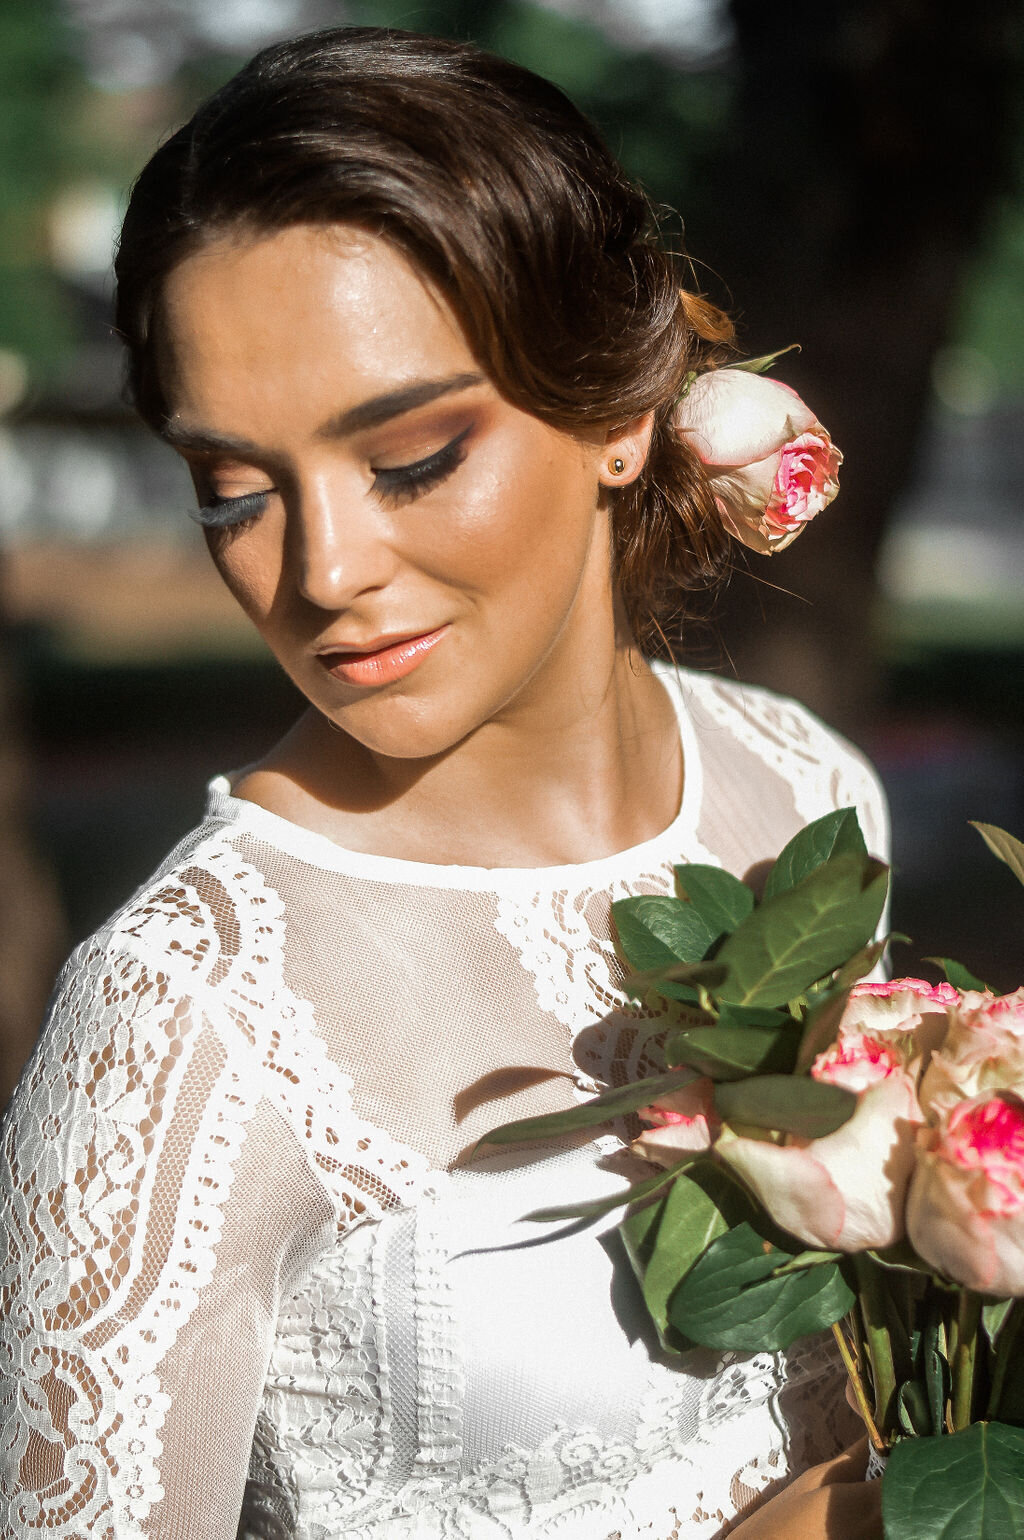 Austin Natural Bridal Makeup 00133